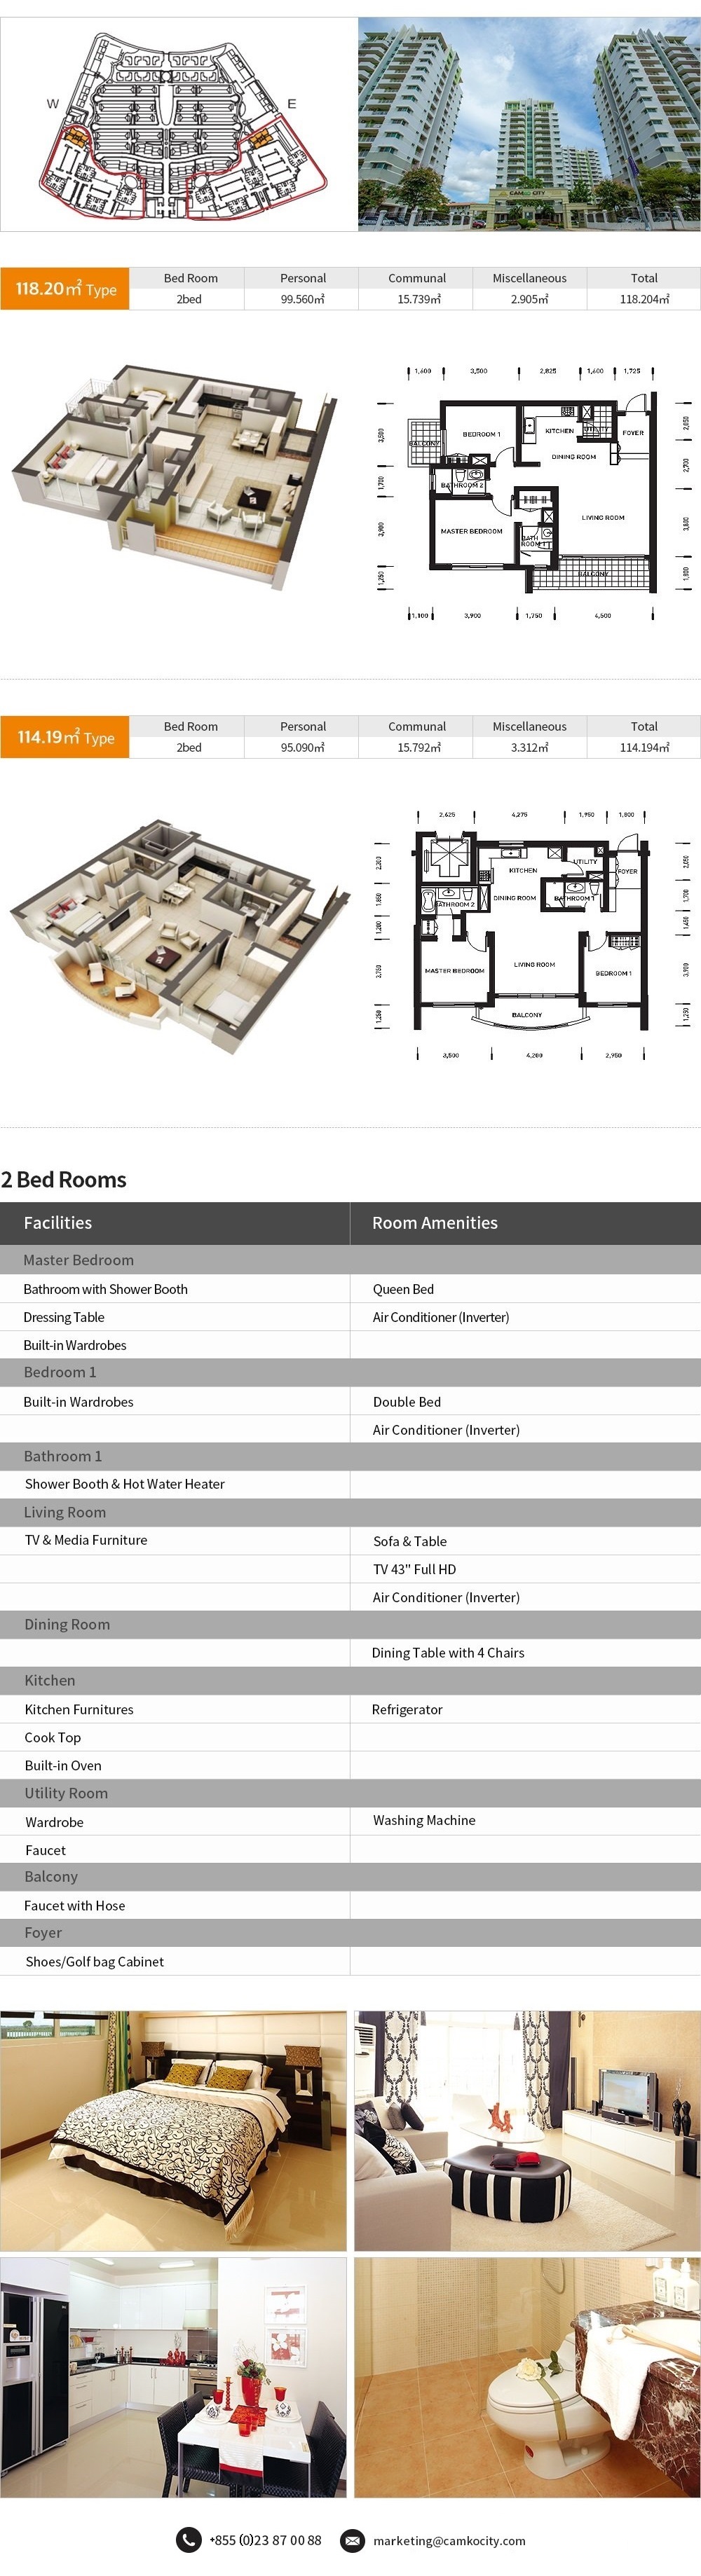 2-bedrooms-condo